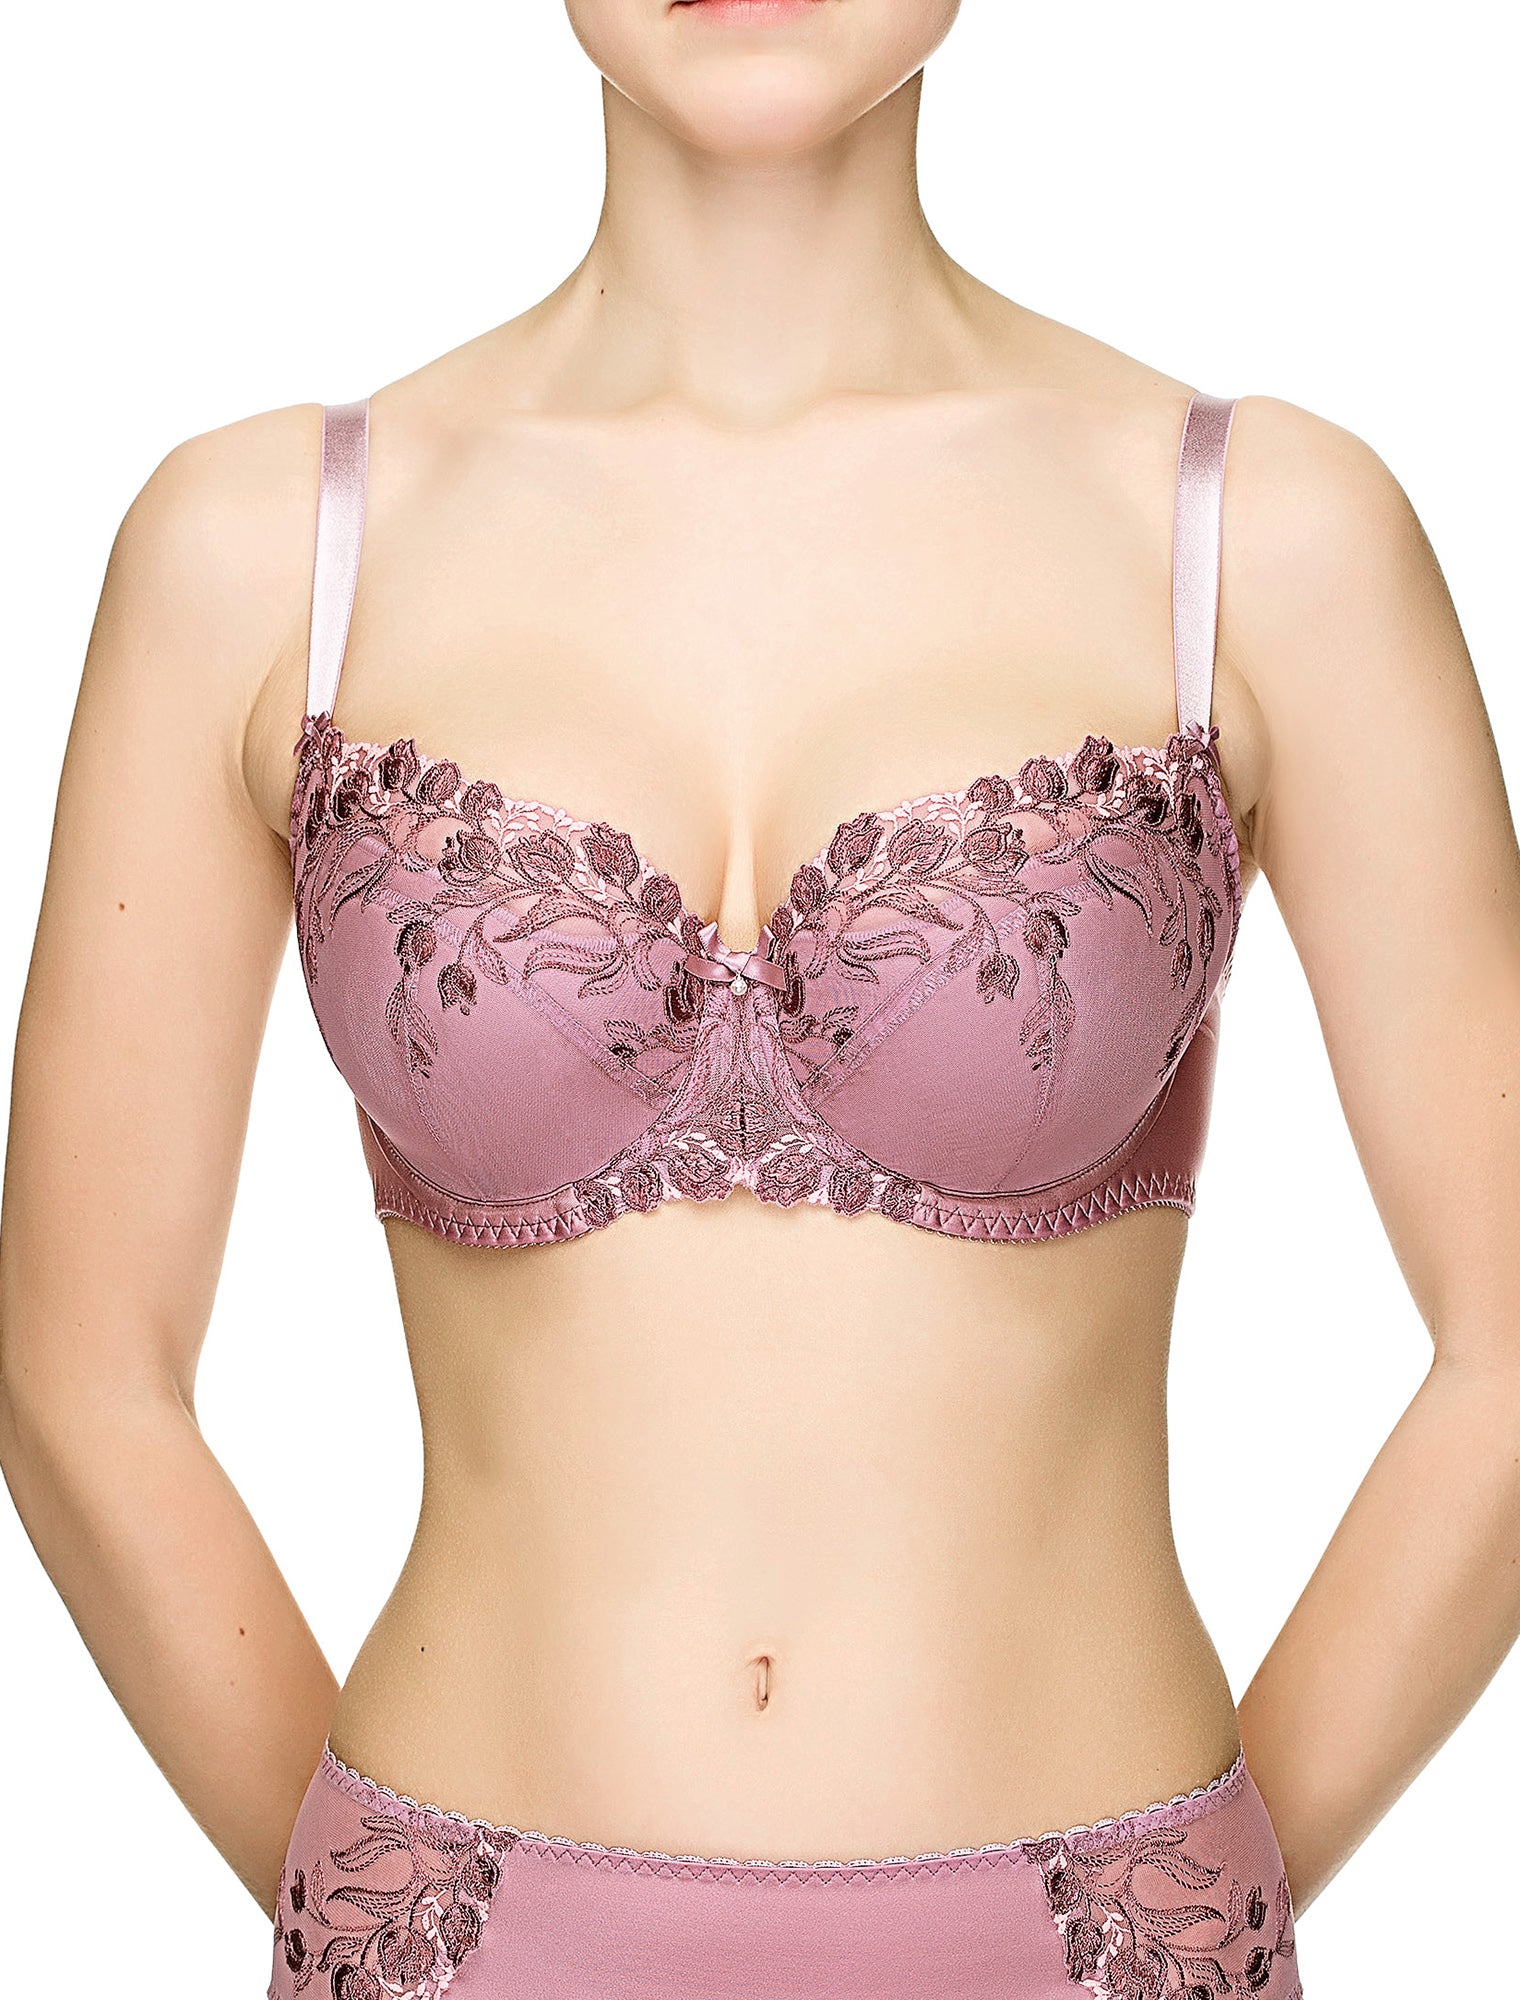 Clovia - Ms Mistletoe! Front-open lace bra with a stylish back